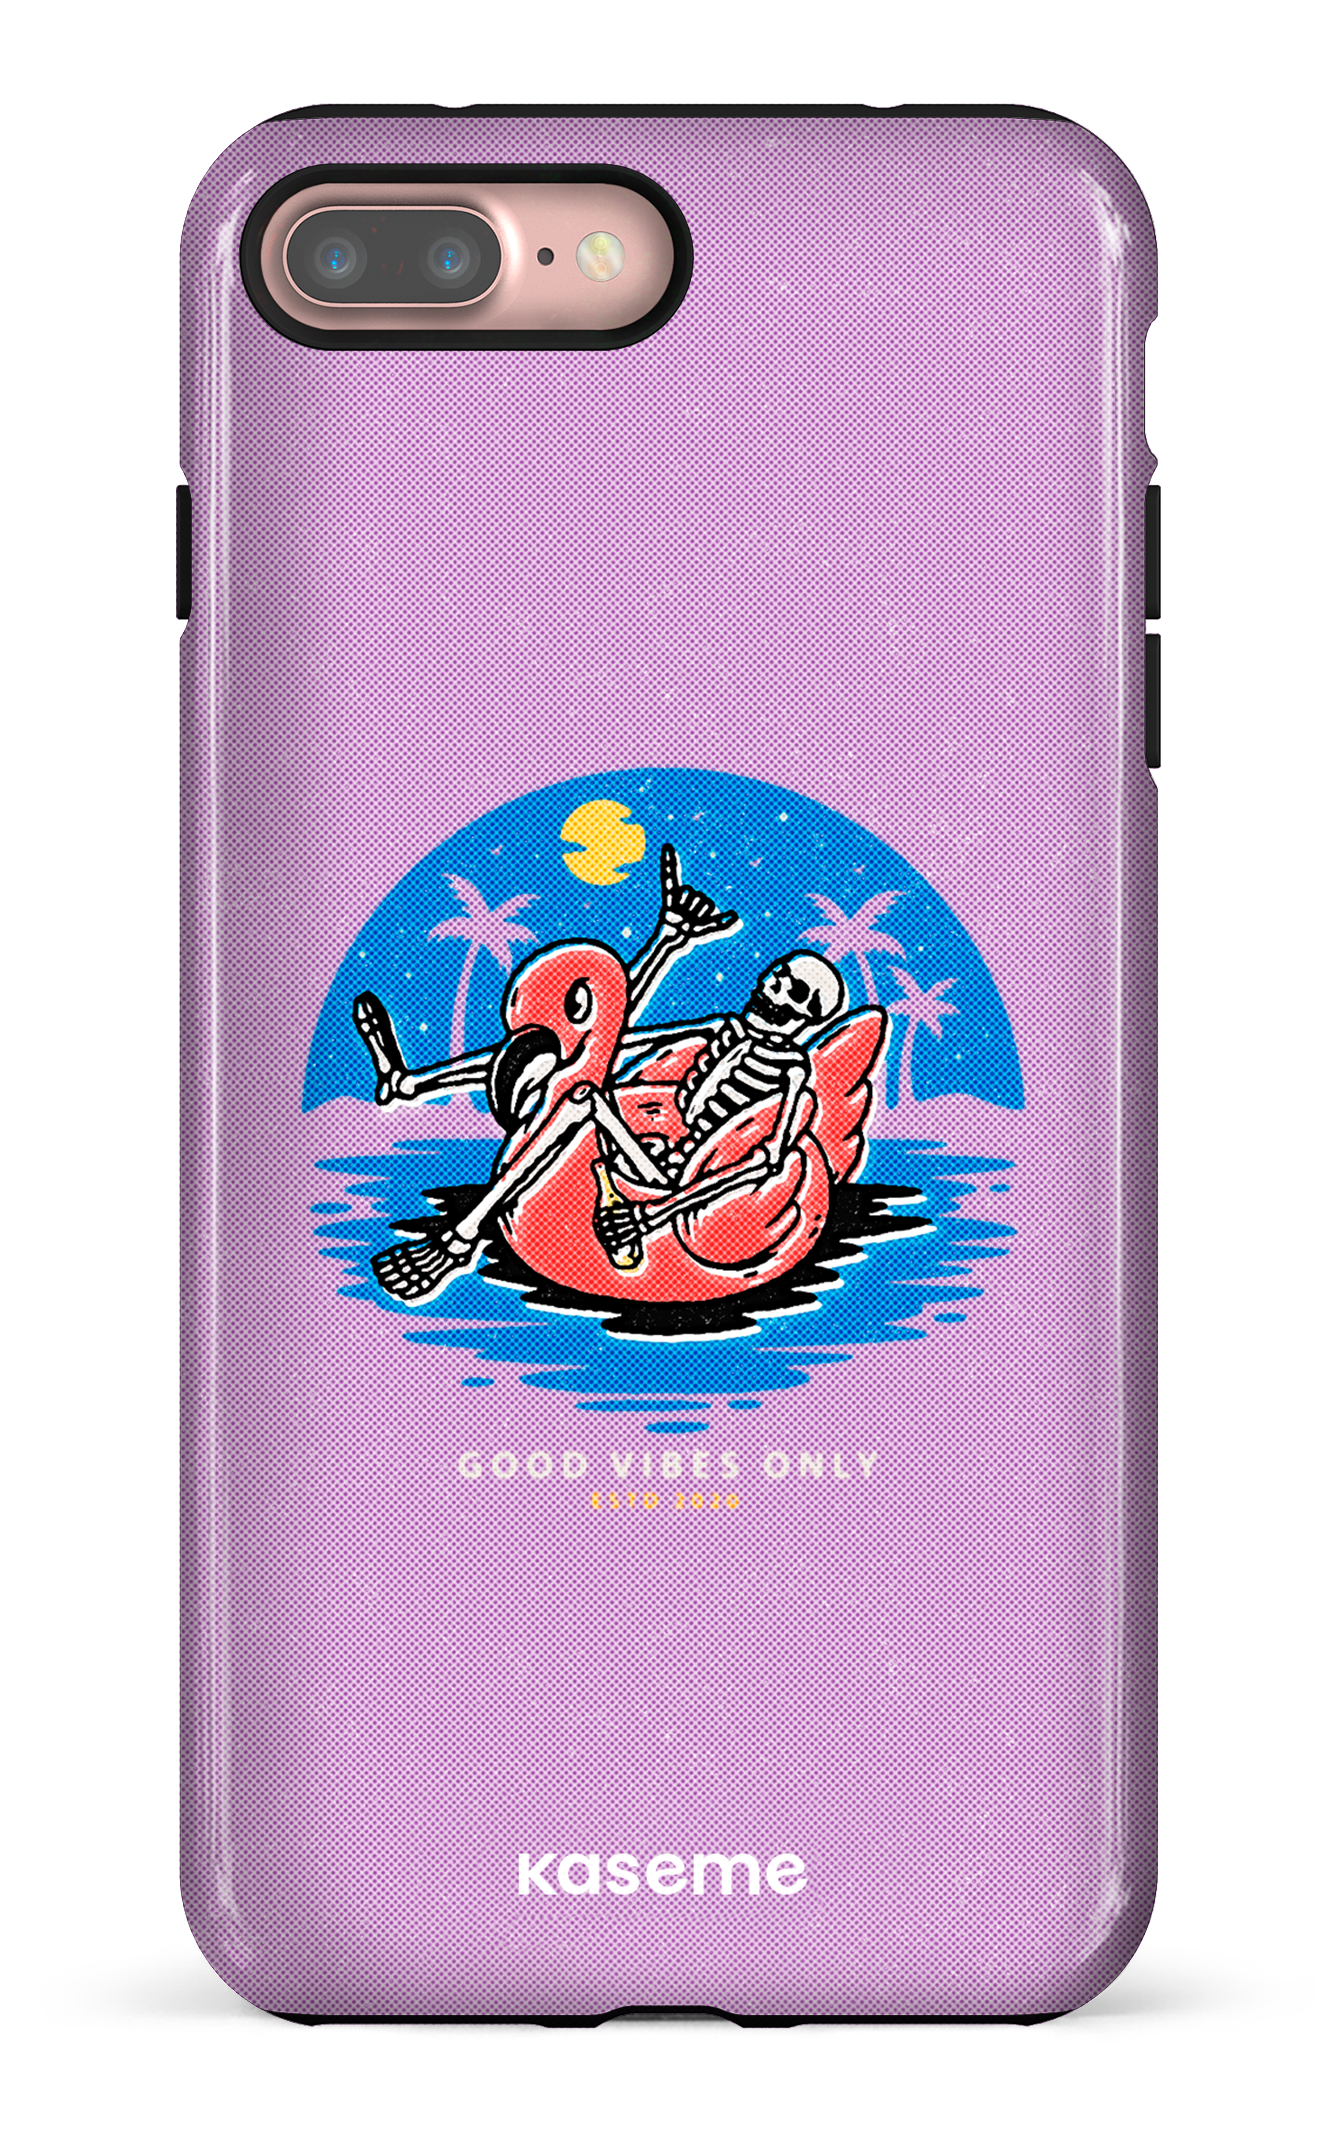 Seaside purple - iPhone 7 Plus